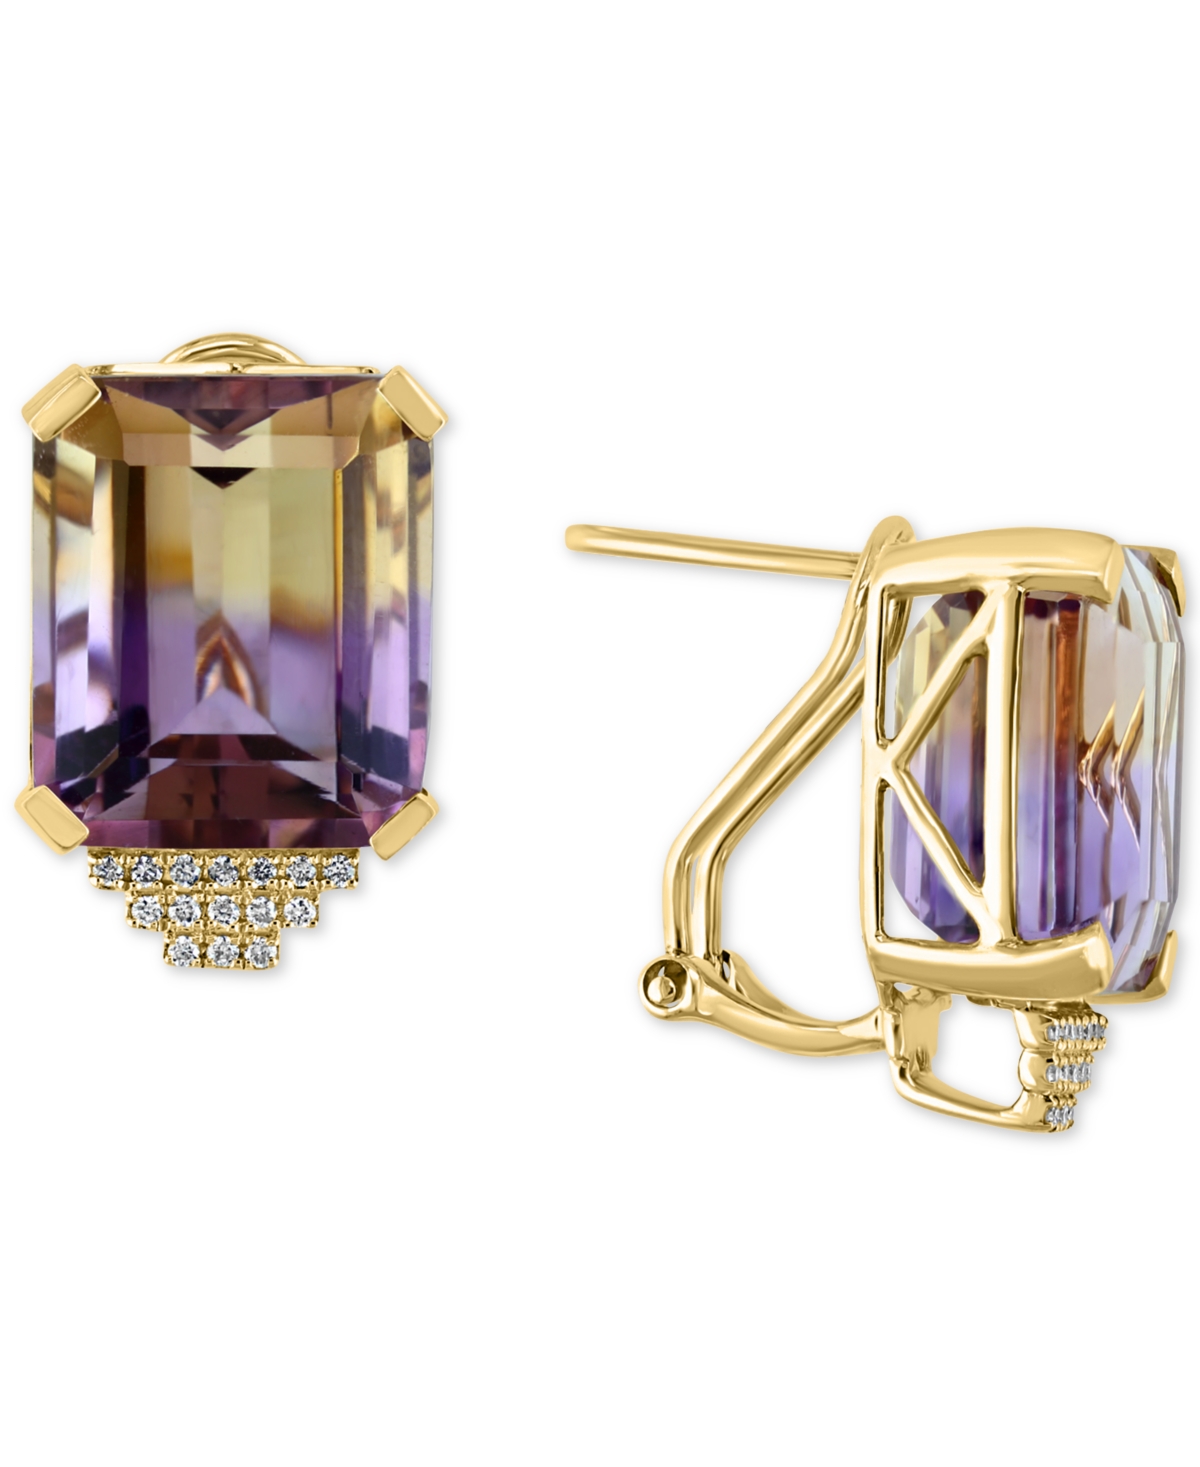 Ametrine (19-3/8 ct. t.w.) & Diamond (1/8 ct. t.w.) Stud Earrings in 14k Gold - Ametrine